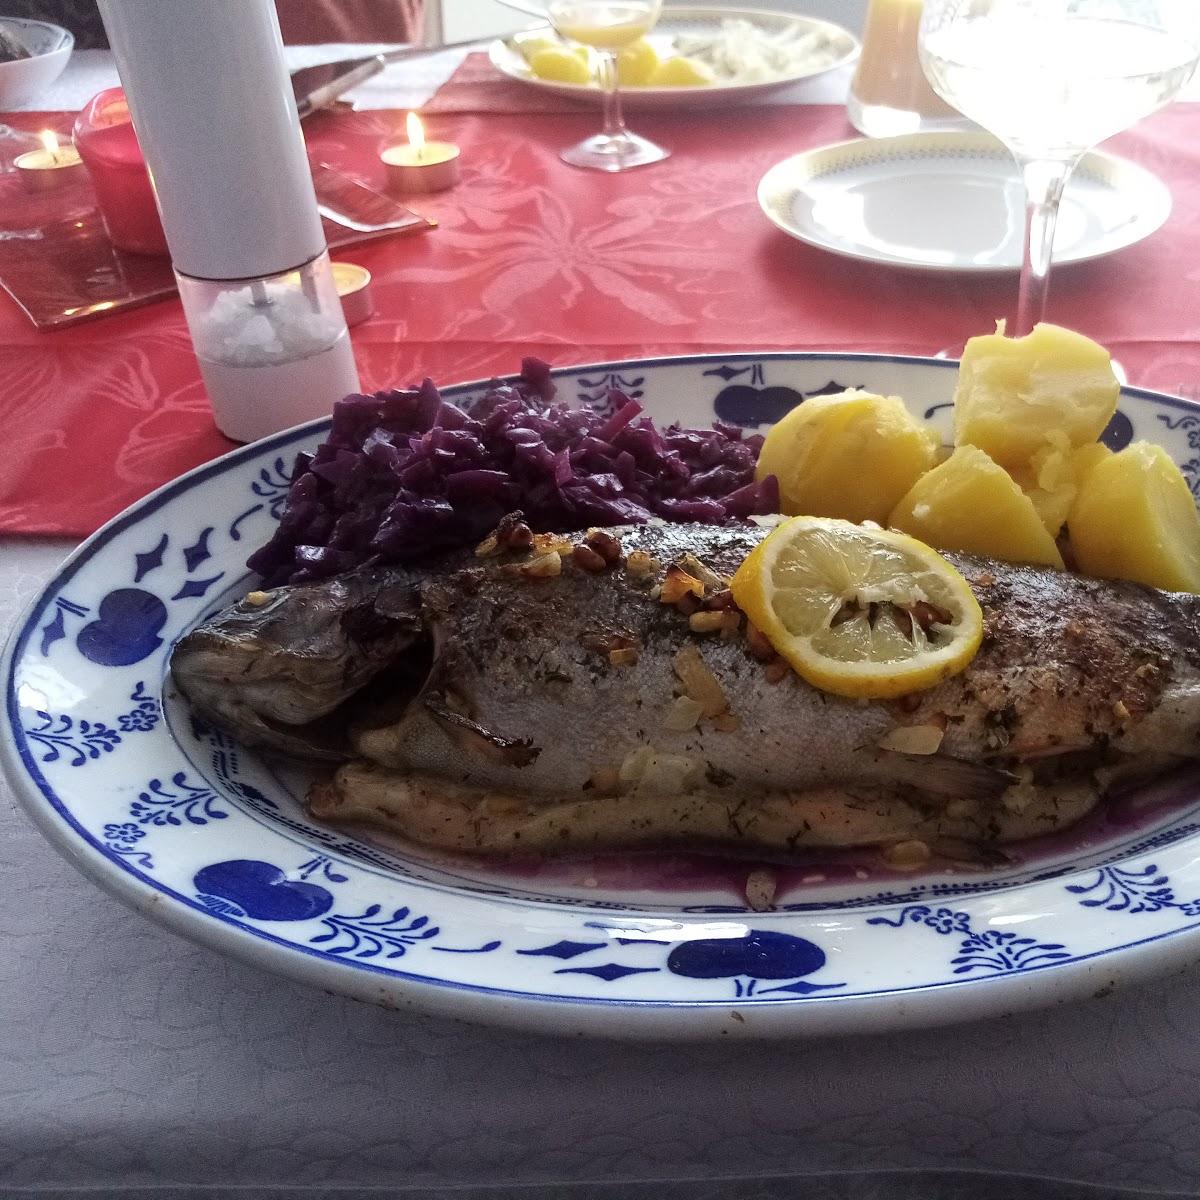 Restaurant "Forelle" in Blaustein